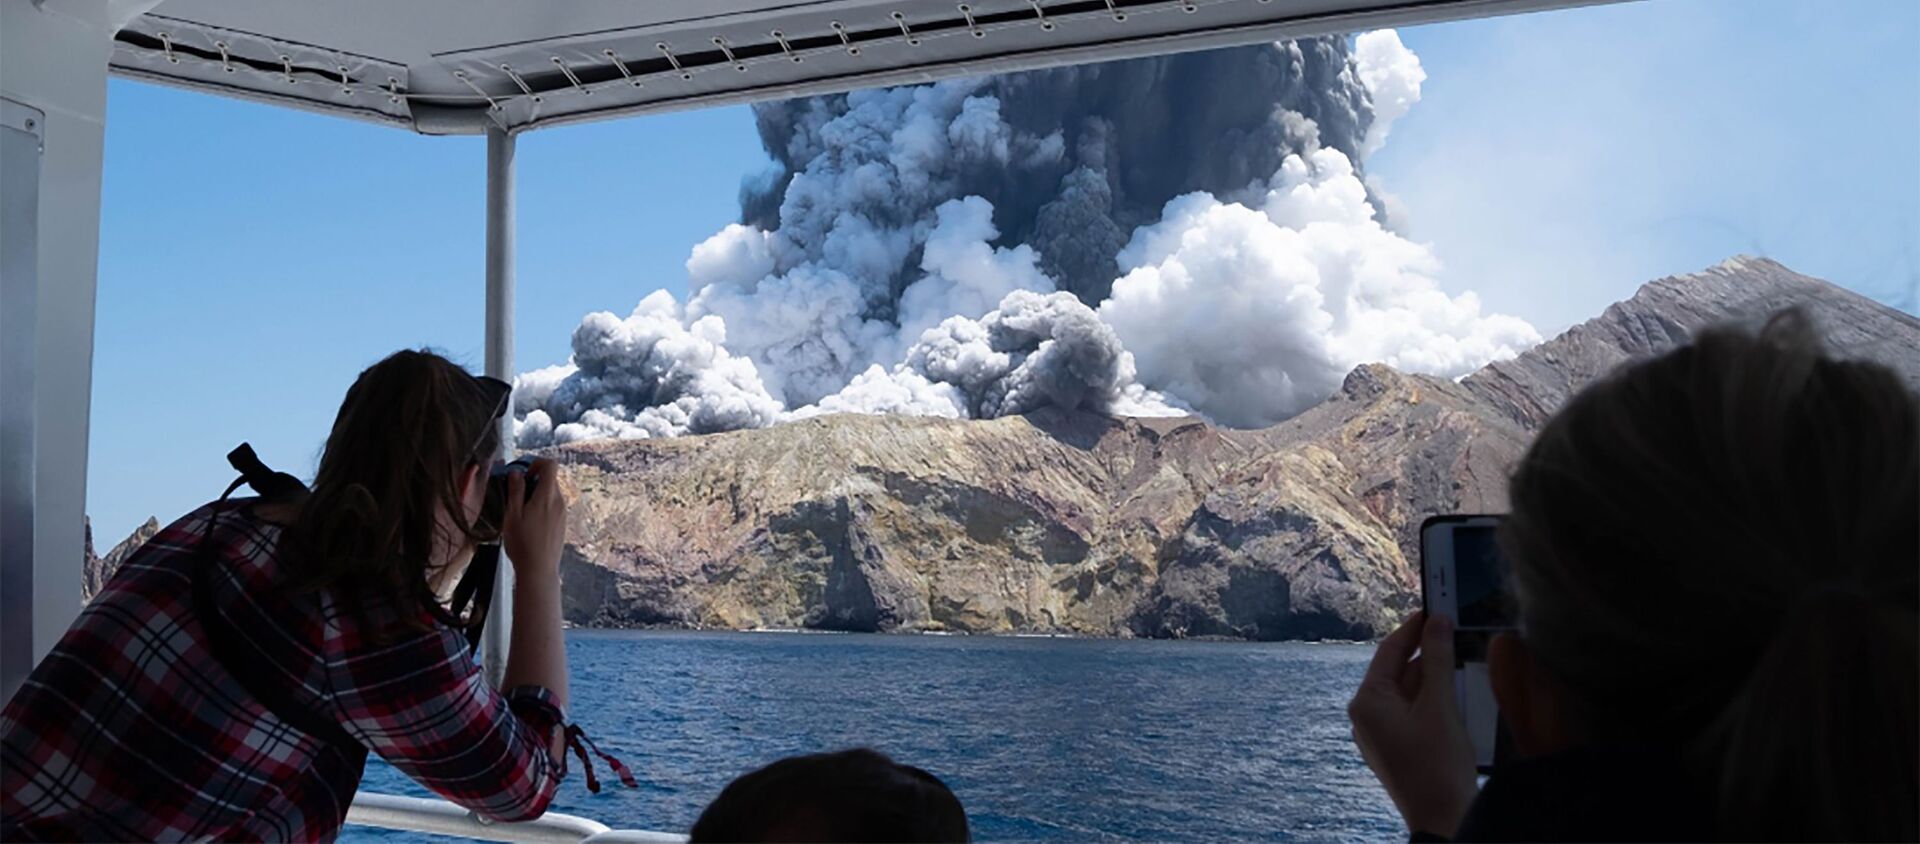 Туристы снимают извержение вулкана на острове Уайт-Айленд в Новой Зеландии - Sputnik Таджикистан, 1920, 09.12.2019